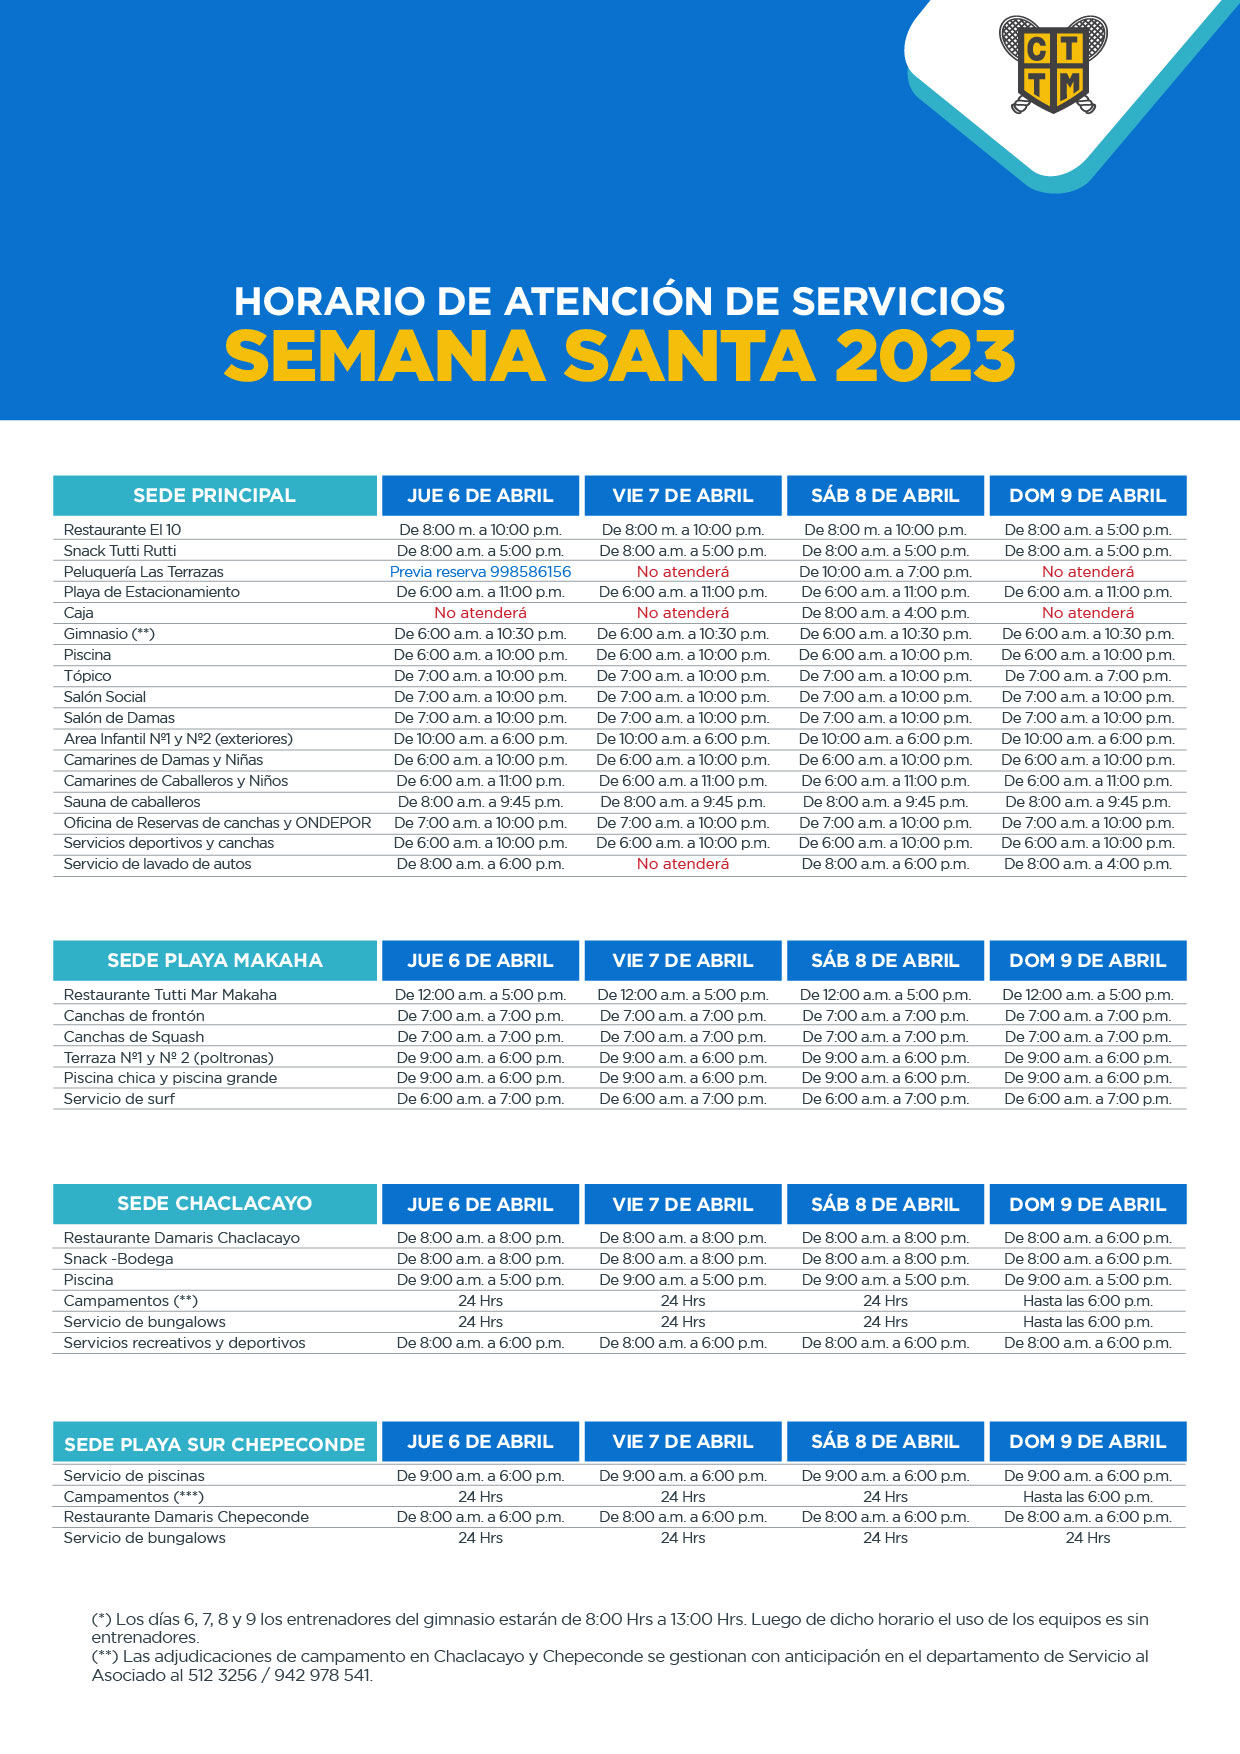 HORARIO DE SEMANA SANTA 2023